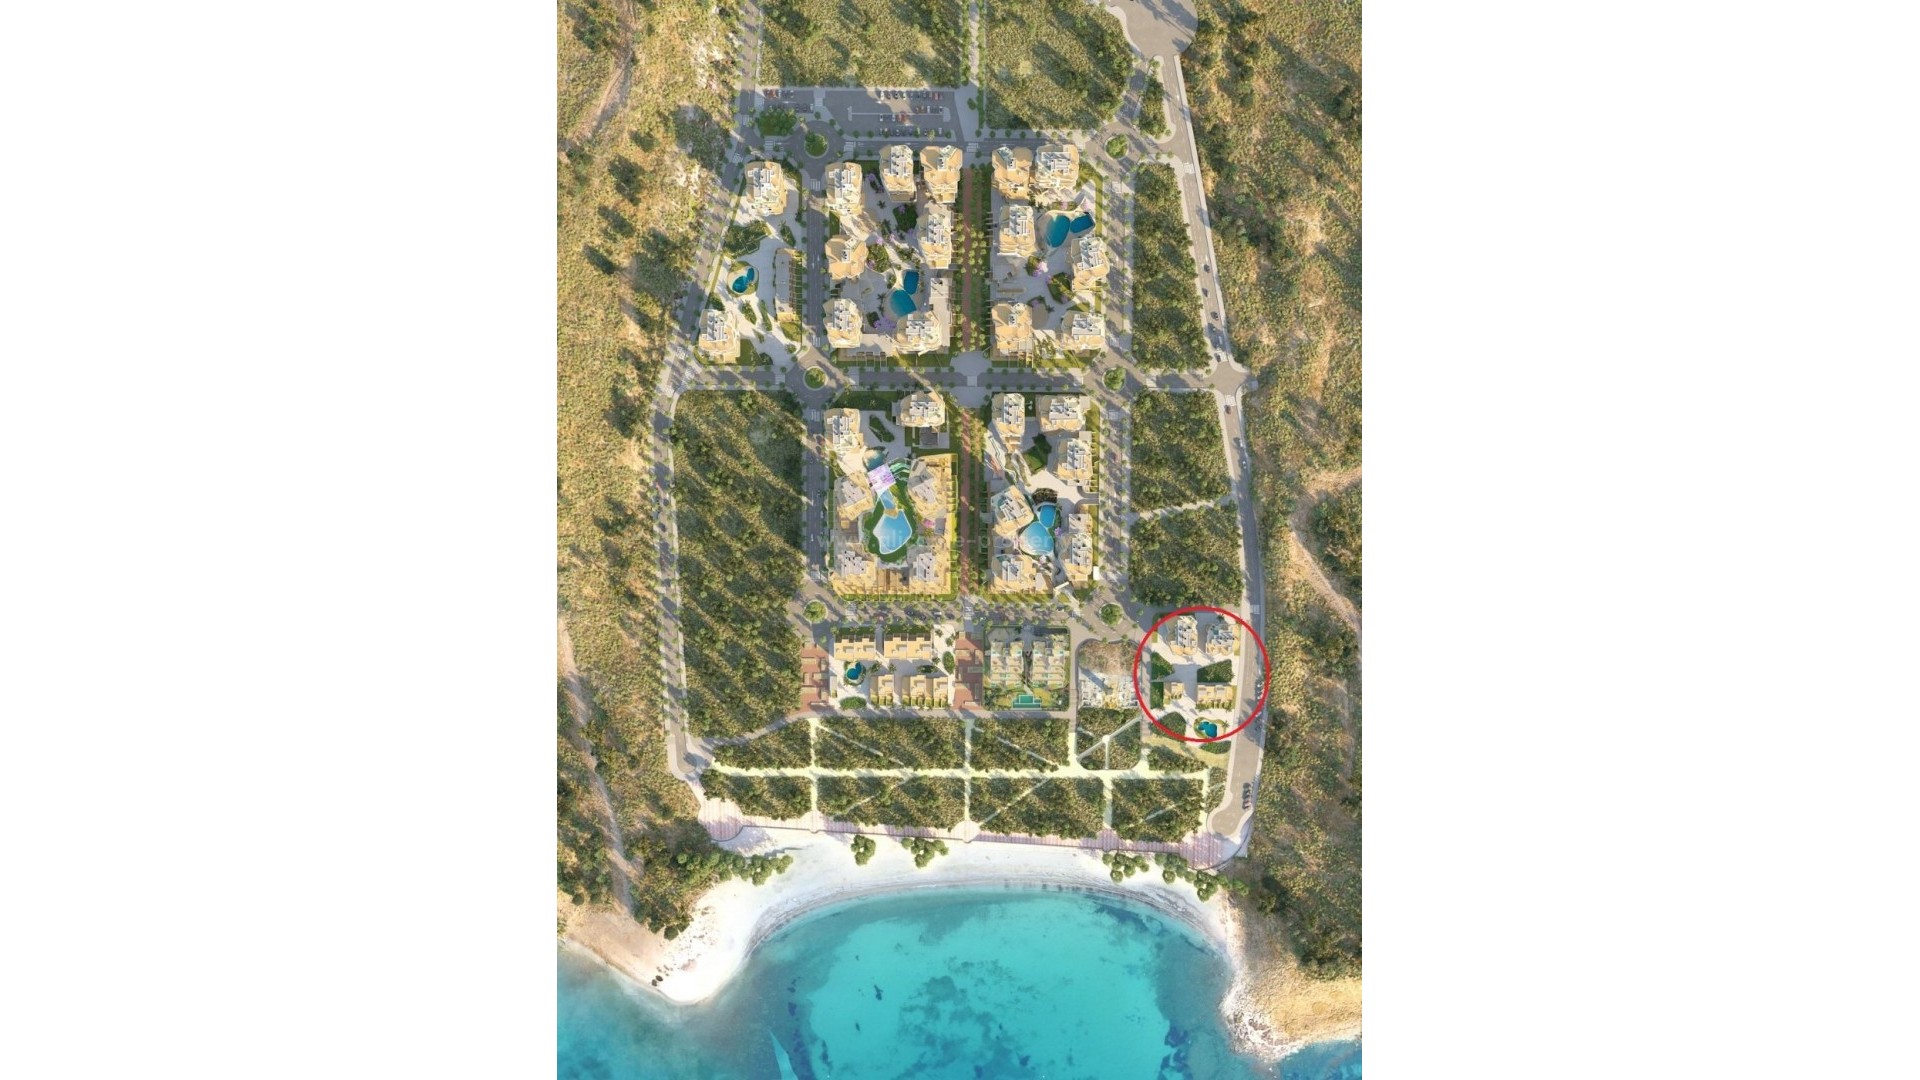 25 lukus-leiligheter i Villajoyosa, bare 50 meter fra sjøen, 2/3 soverom, 2 bad,  store terrasser og flott felles bassengtreningsstudio, badstue, dampbad